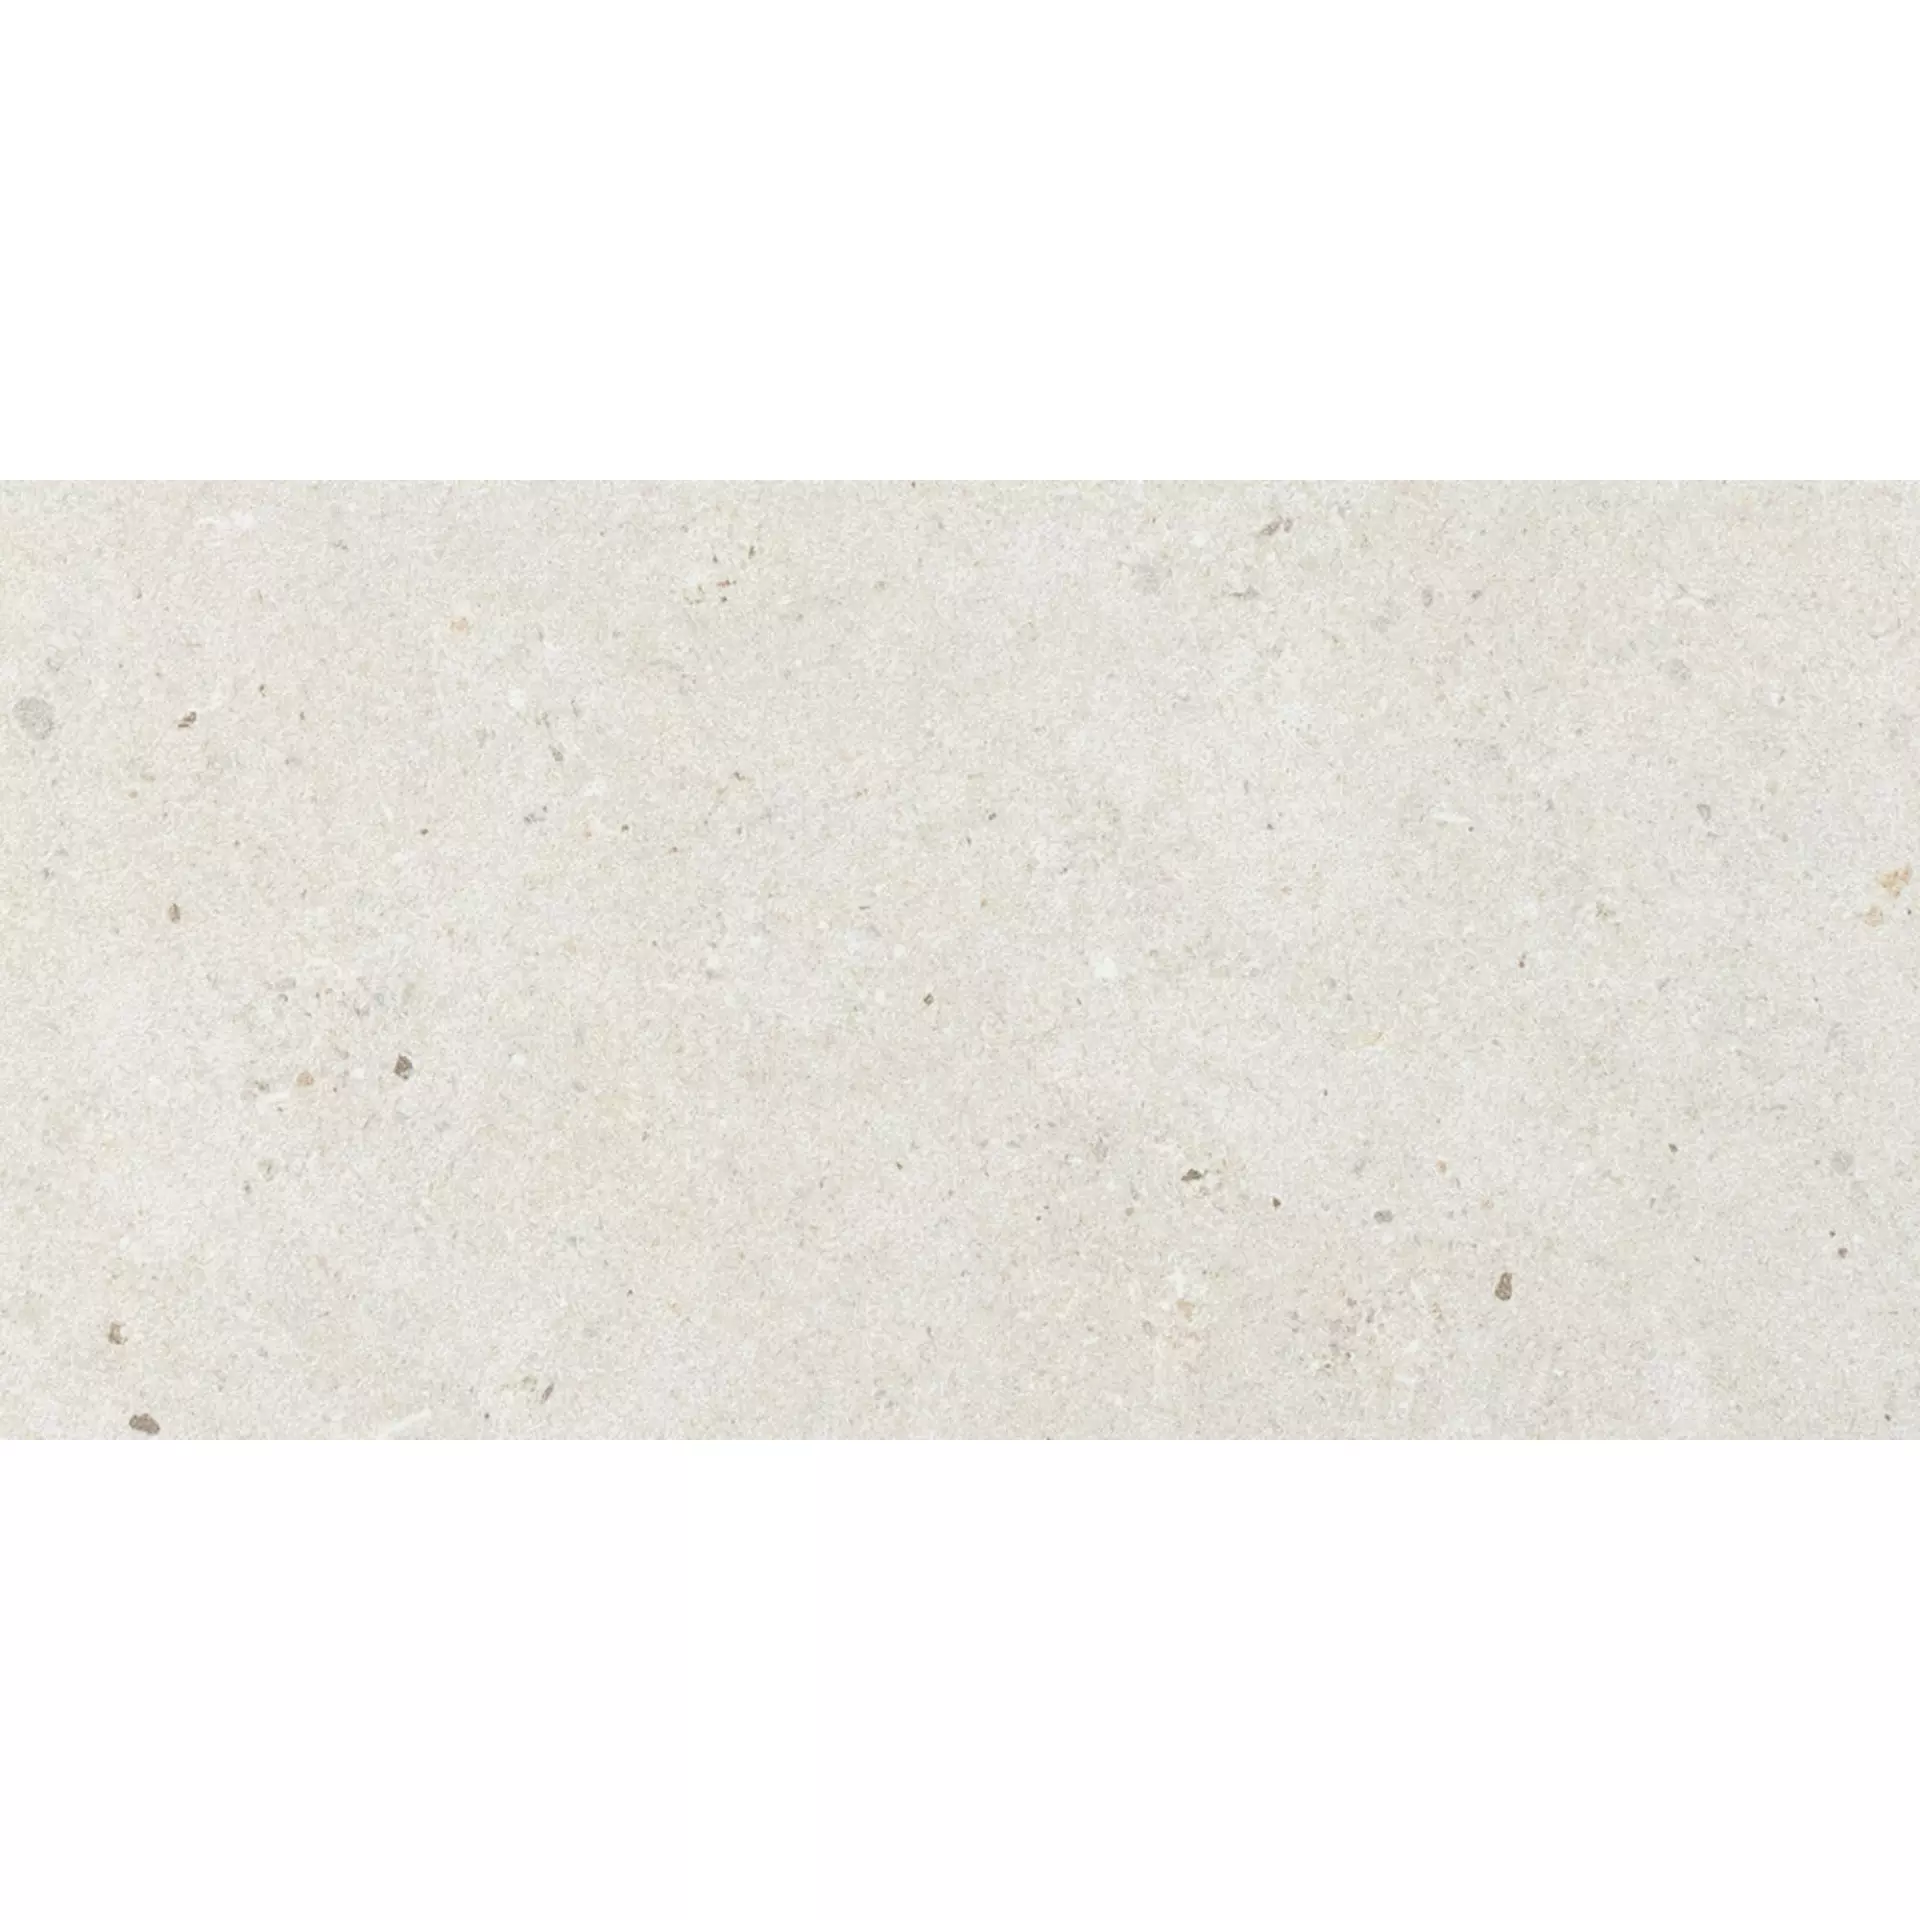 Italgraniti Silver Grain White Naturale – Matt SI0163 30x60cm rectified